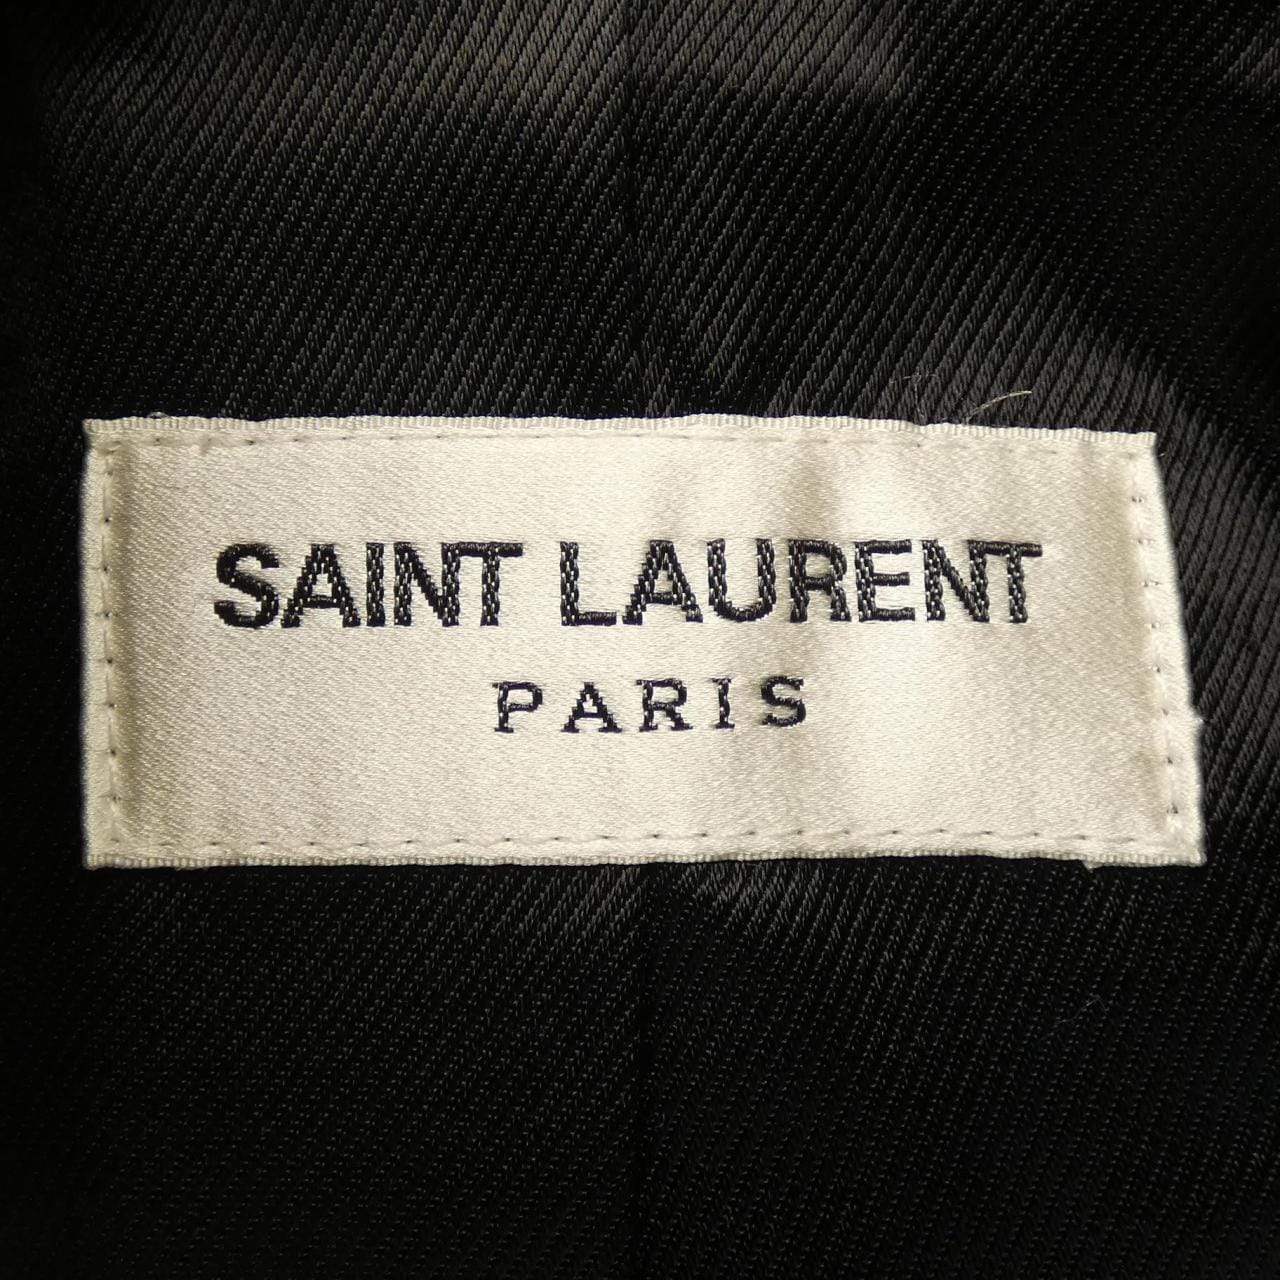 SAINT LAURENT laurent leather jacket